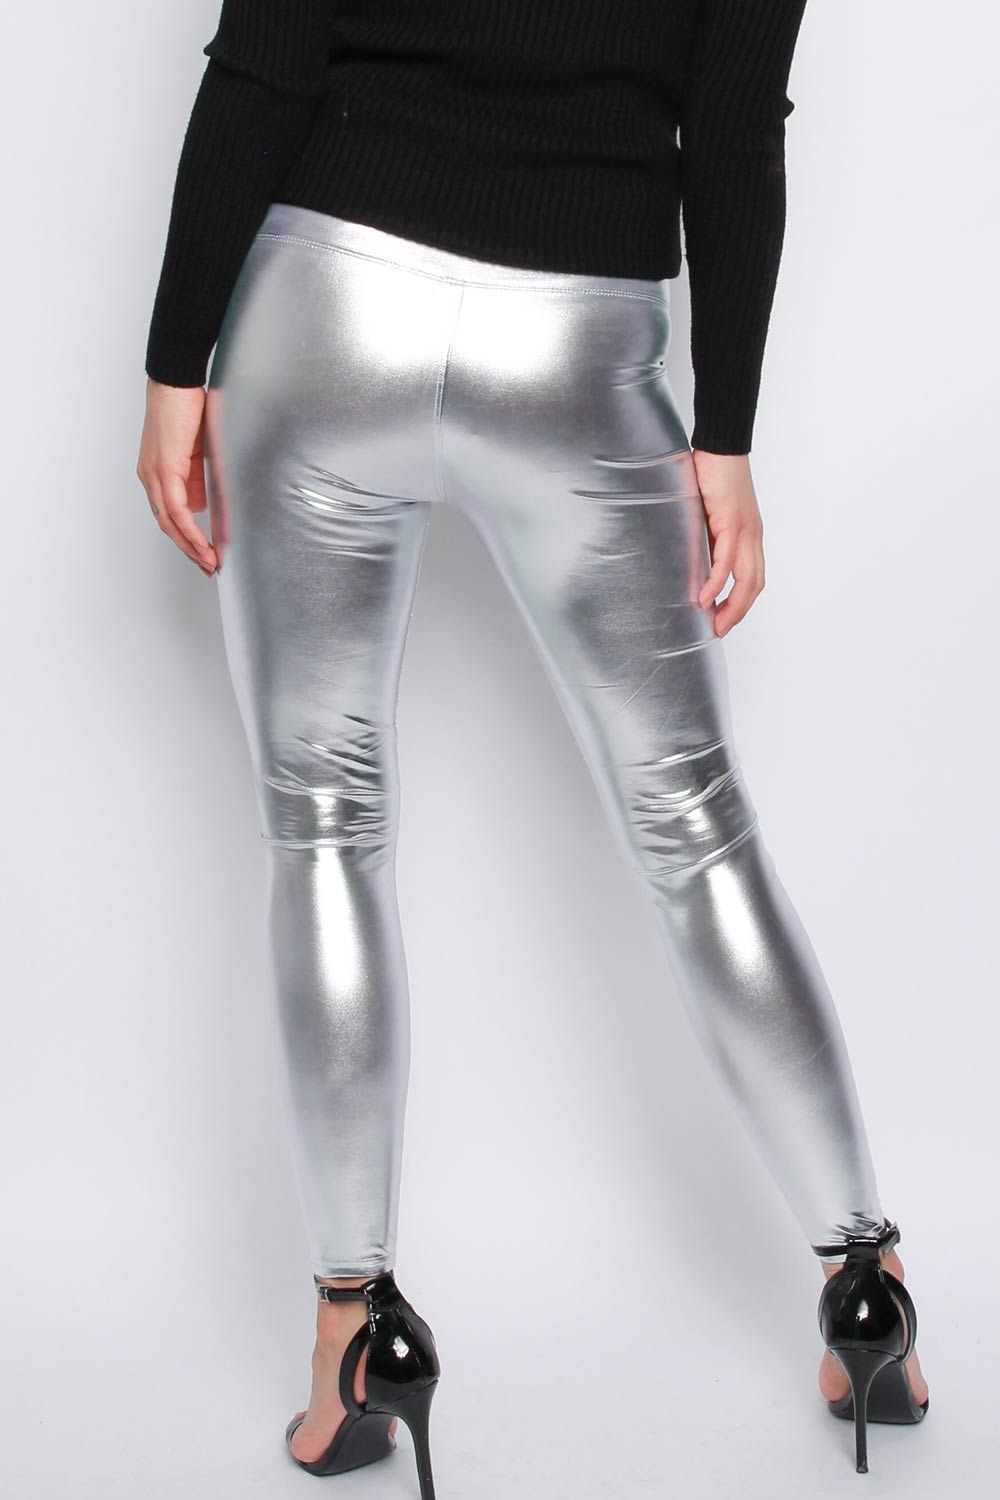 Pin by jorge_rotunno on lo mejor  Wet look leggings, Vinyl leggings,  Metallic leggings